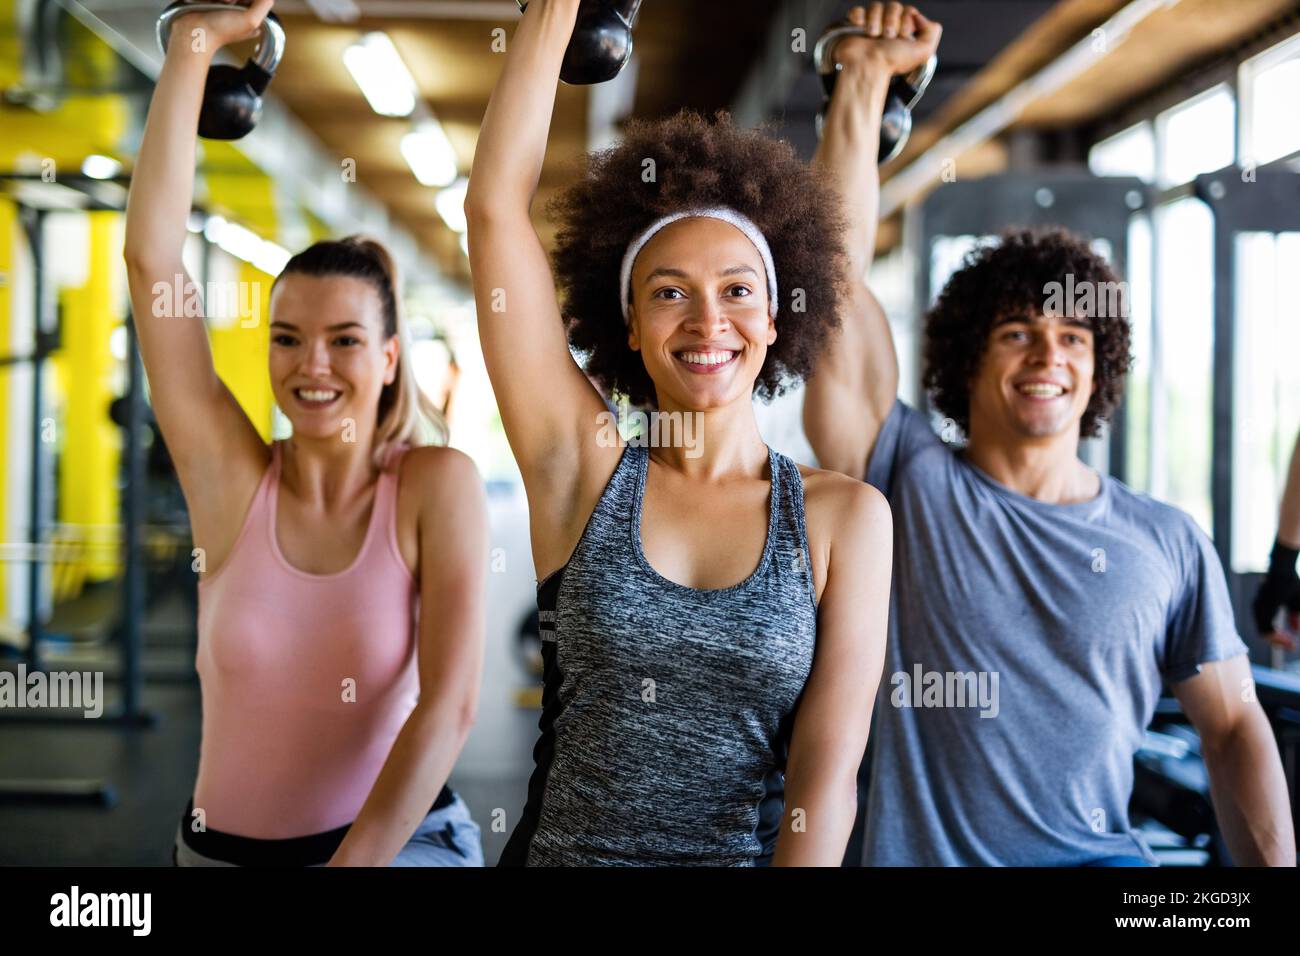 Grupo de personas en forma levantando pesas durante una clase de ejercicio en el gimnasio Foto de stock